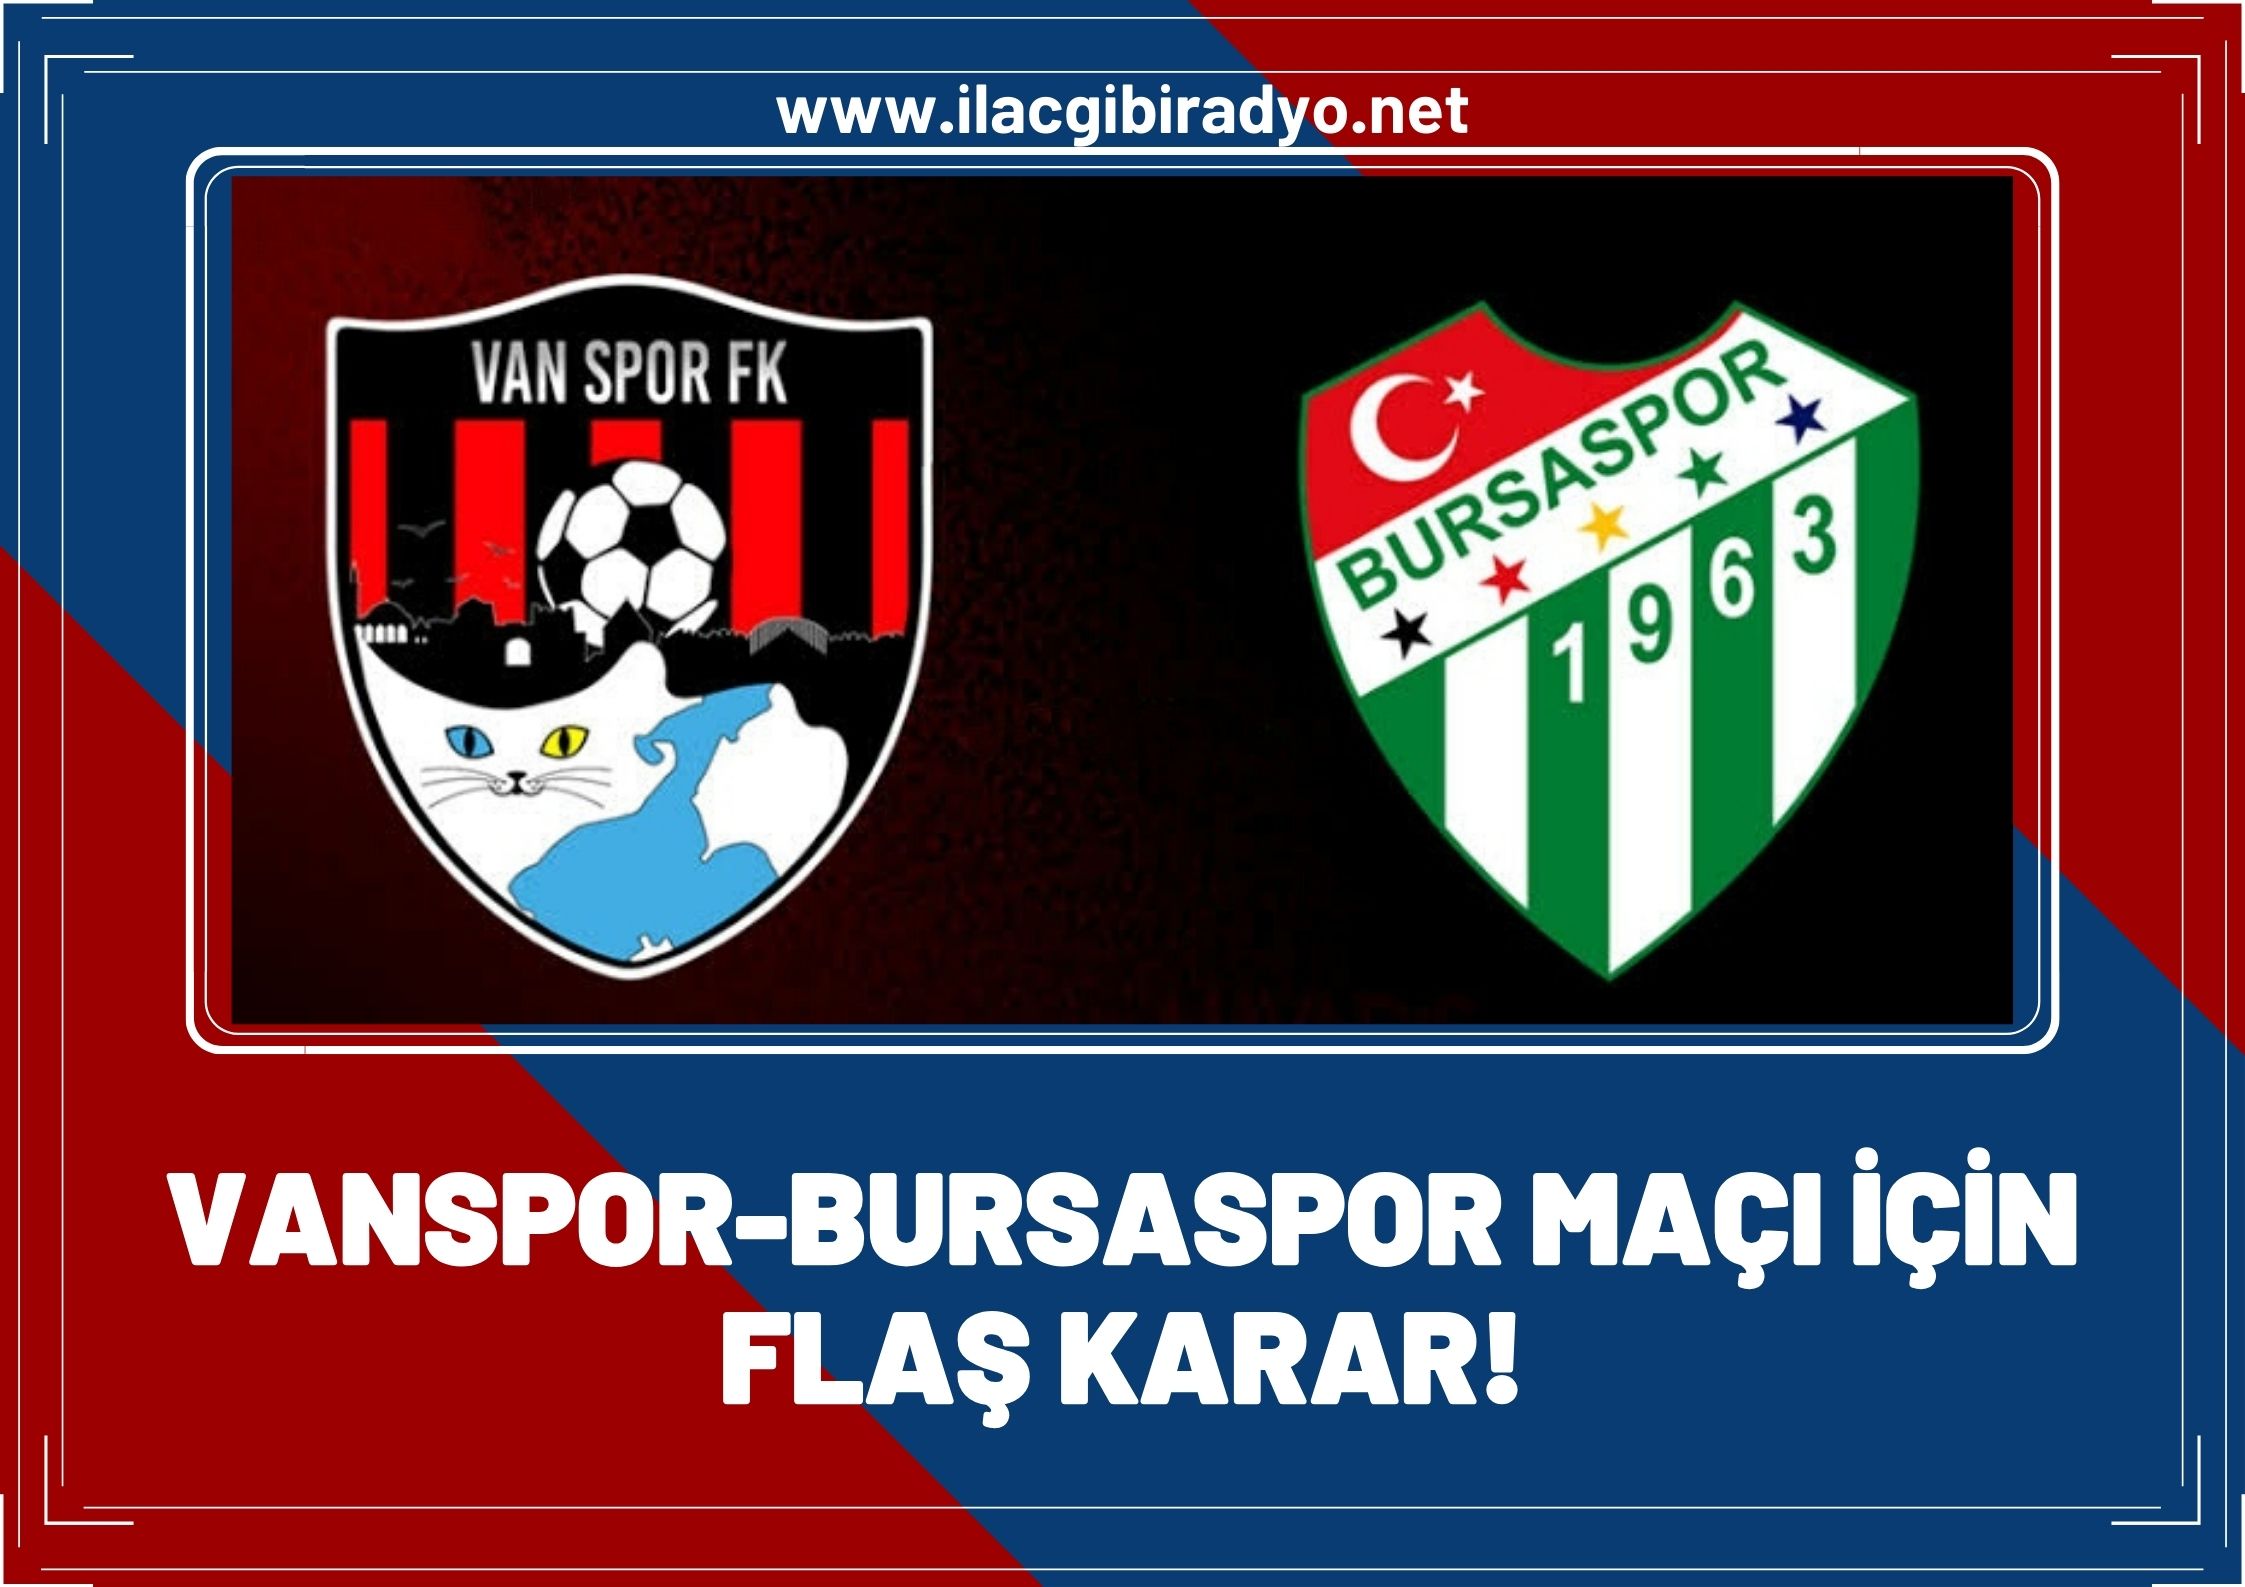 Vanspor - Bursaspor maçı ile ilgili flaş karar!